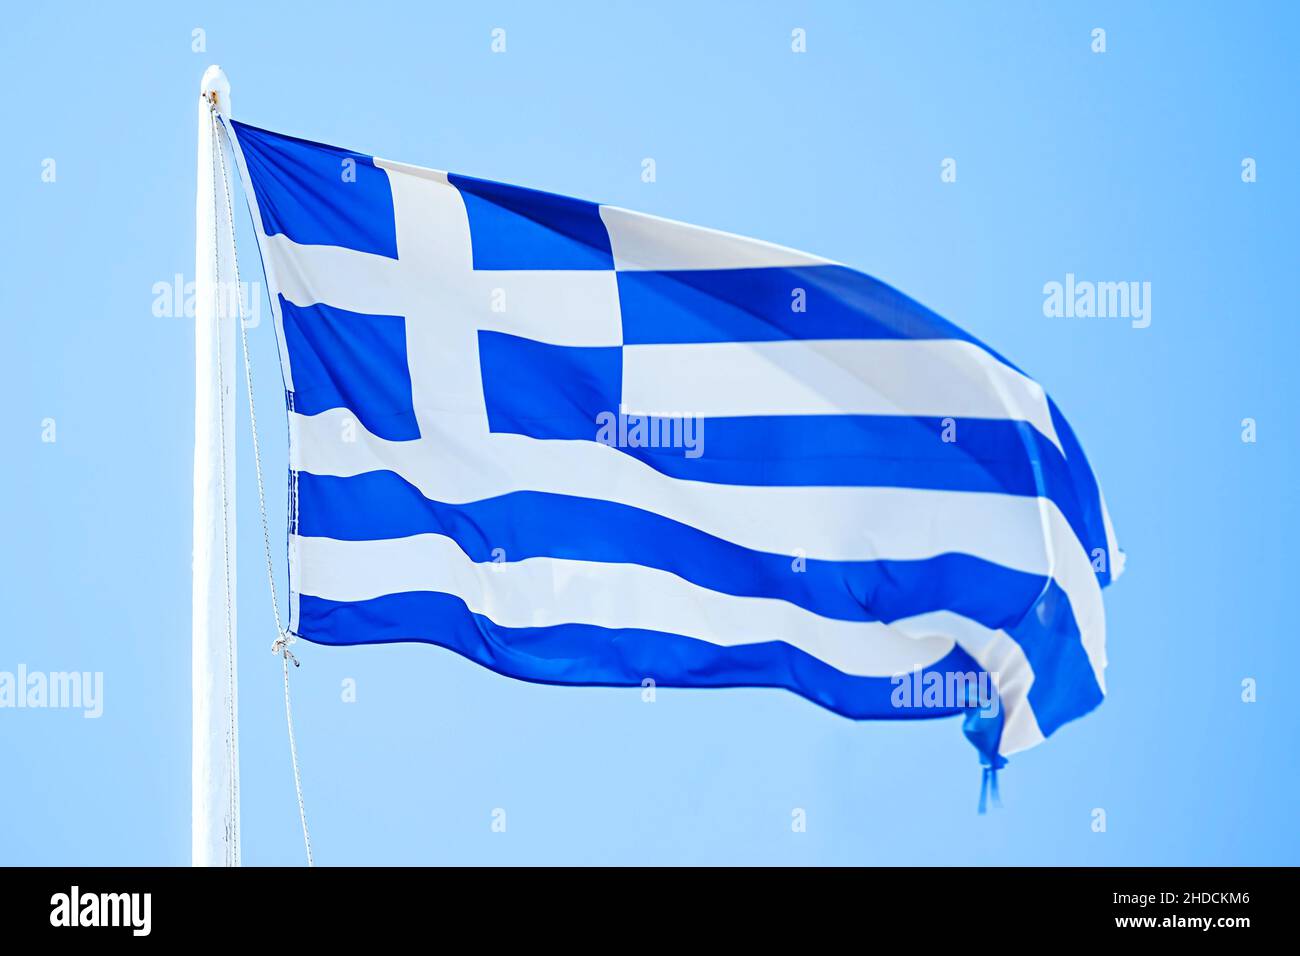 https://c8.alamy.com/comp/2HDCKM6/eine-griechische-flagge-unter-blauem-himmel-griechische-fahne-flaggenmast-fahnenmast-blauer-himmel-2HDCKM6.jpg